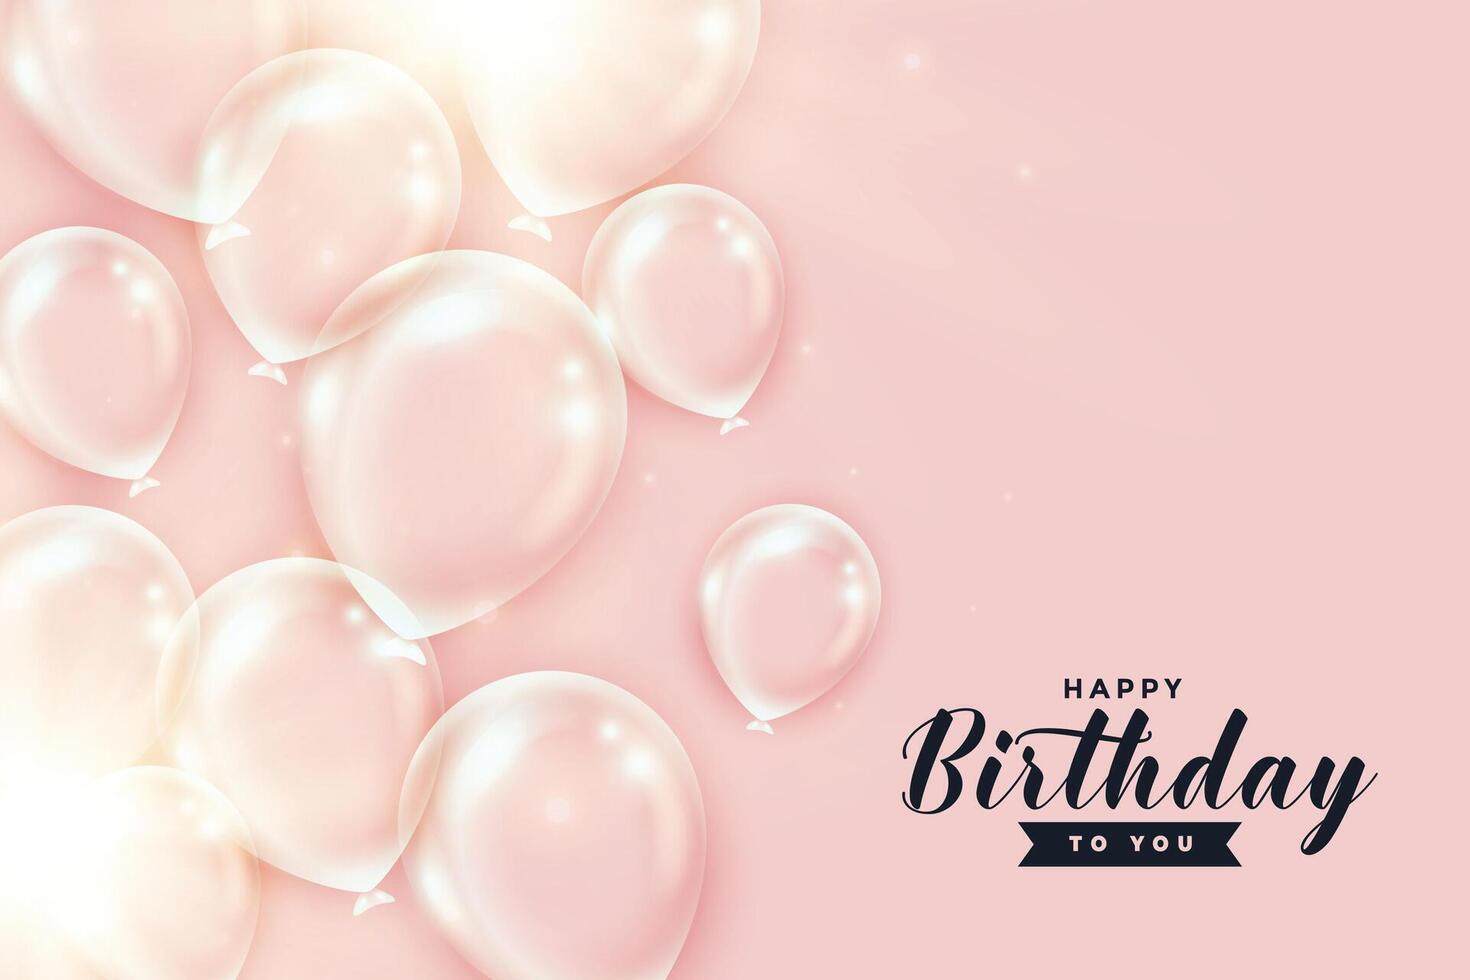 skinande transparent födelsedag ballonger på persika Färg bakgrund vektor